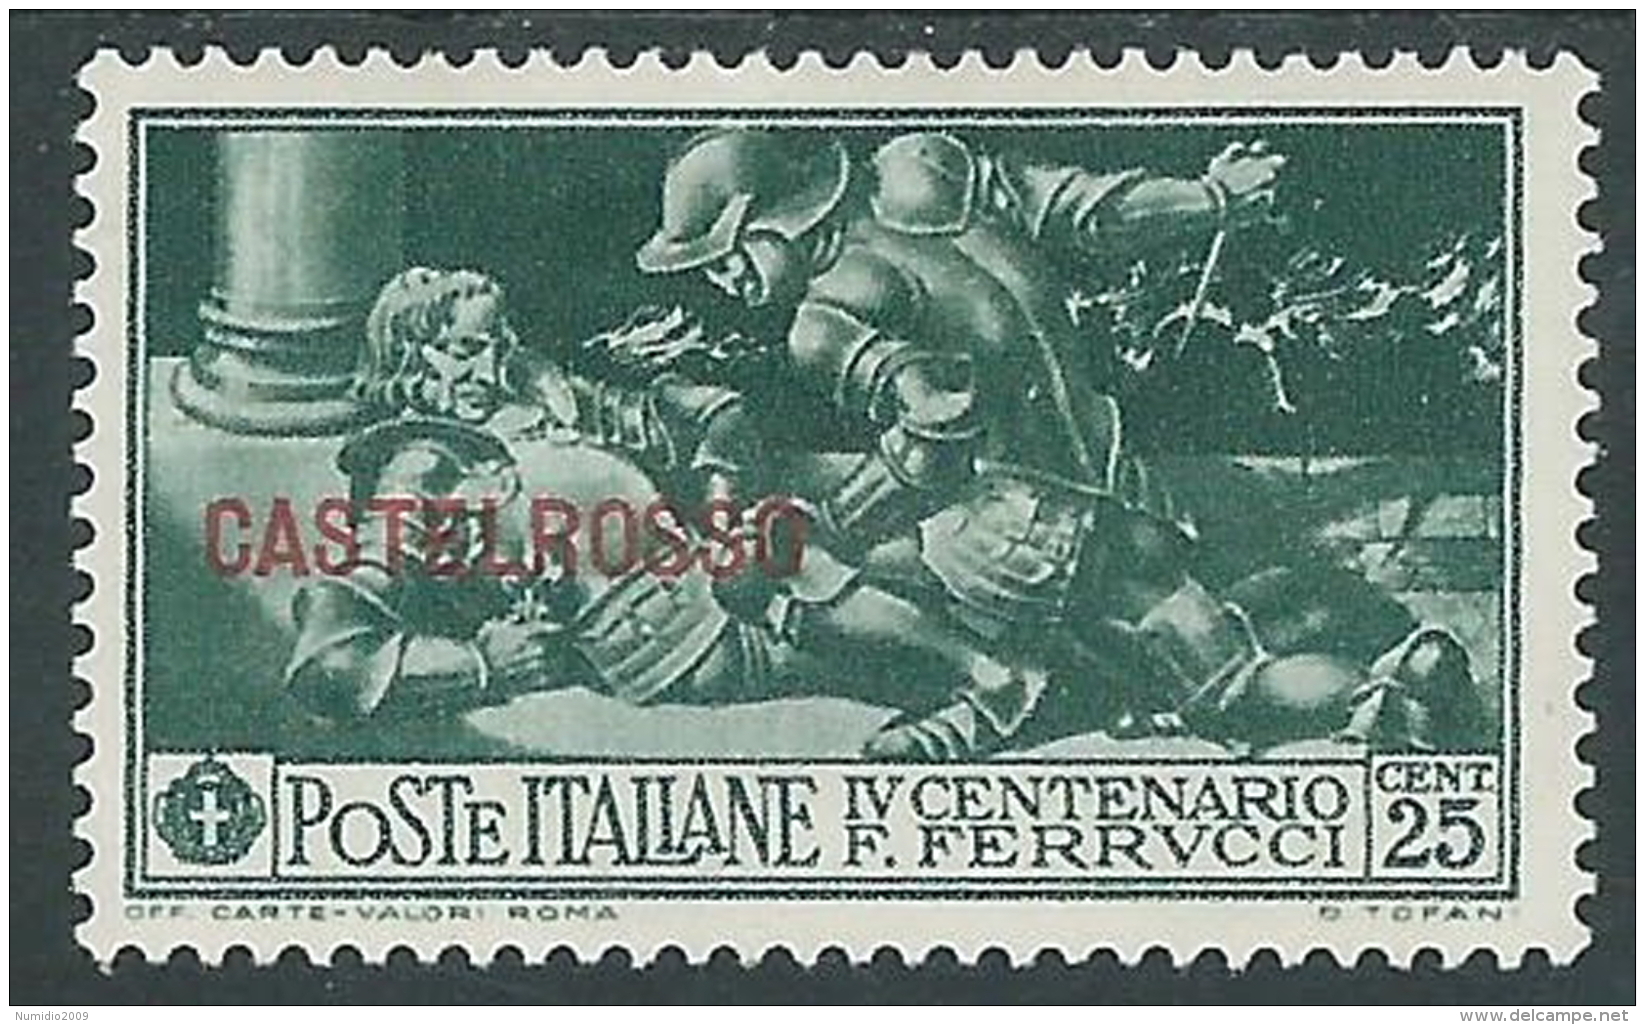 1930 CASTELROSSO FERRUCCI 25 CENT MH * - I41-2 - Castelrosso